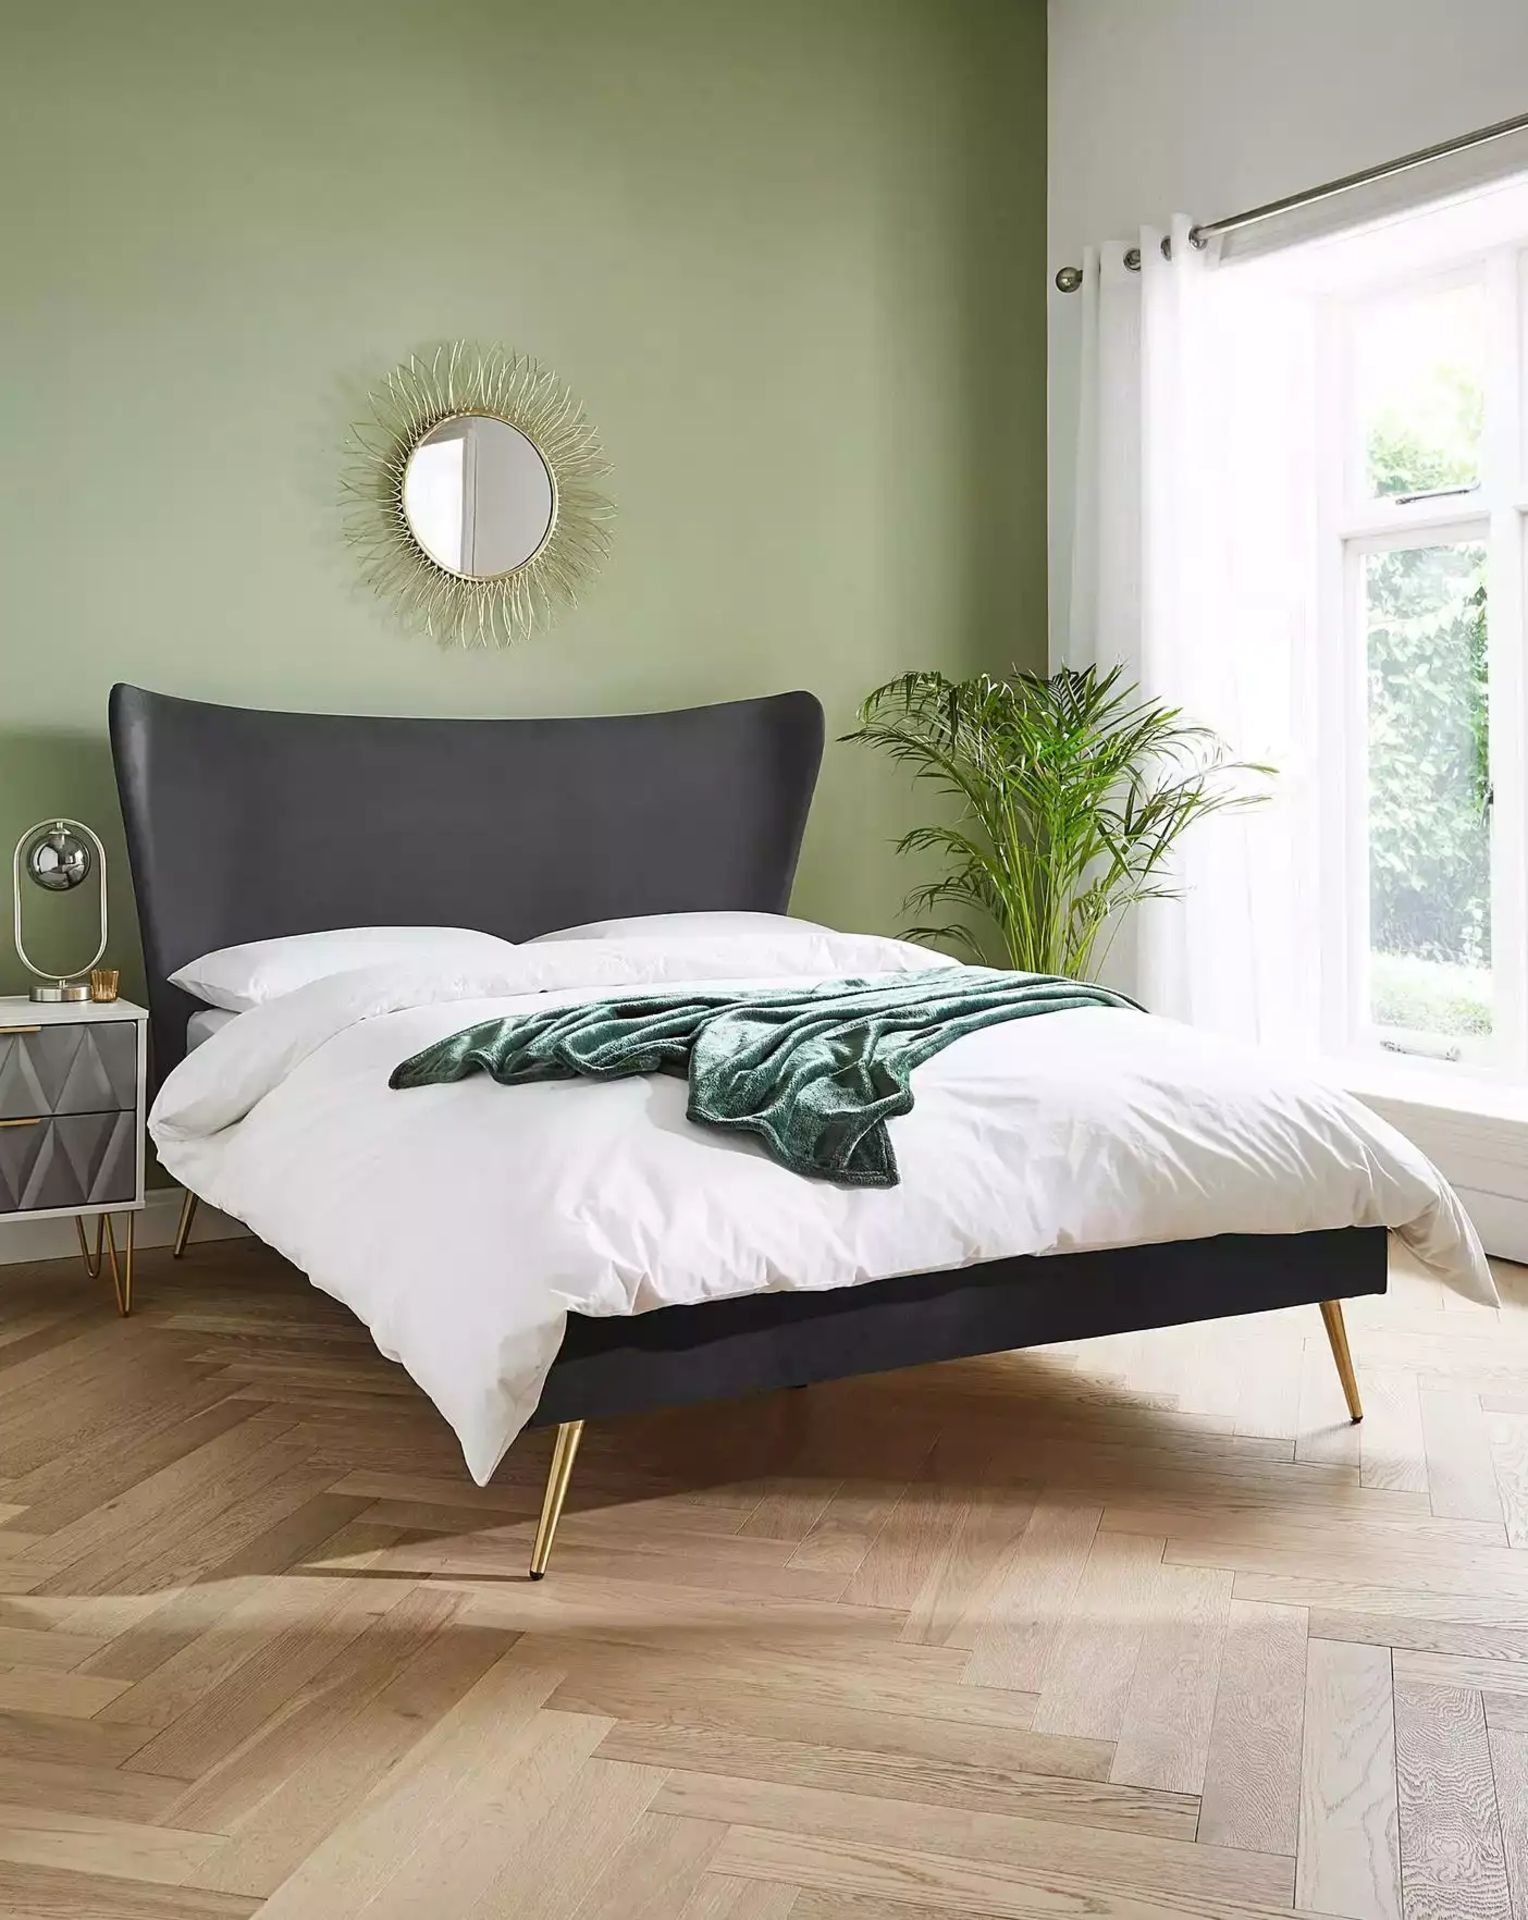 BRAND NEW MARKLE Velvet KINGSIZE Bed. CHARCOAL. RRP £449 EACH. The Markle Velvet Bed Frame, inspired